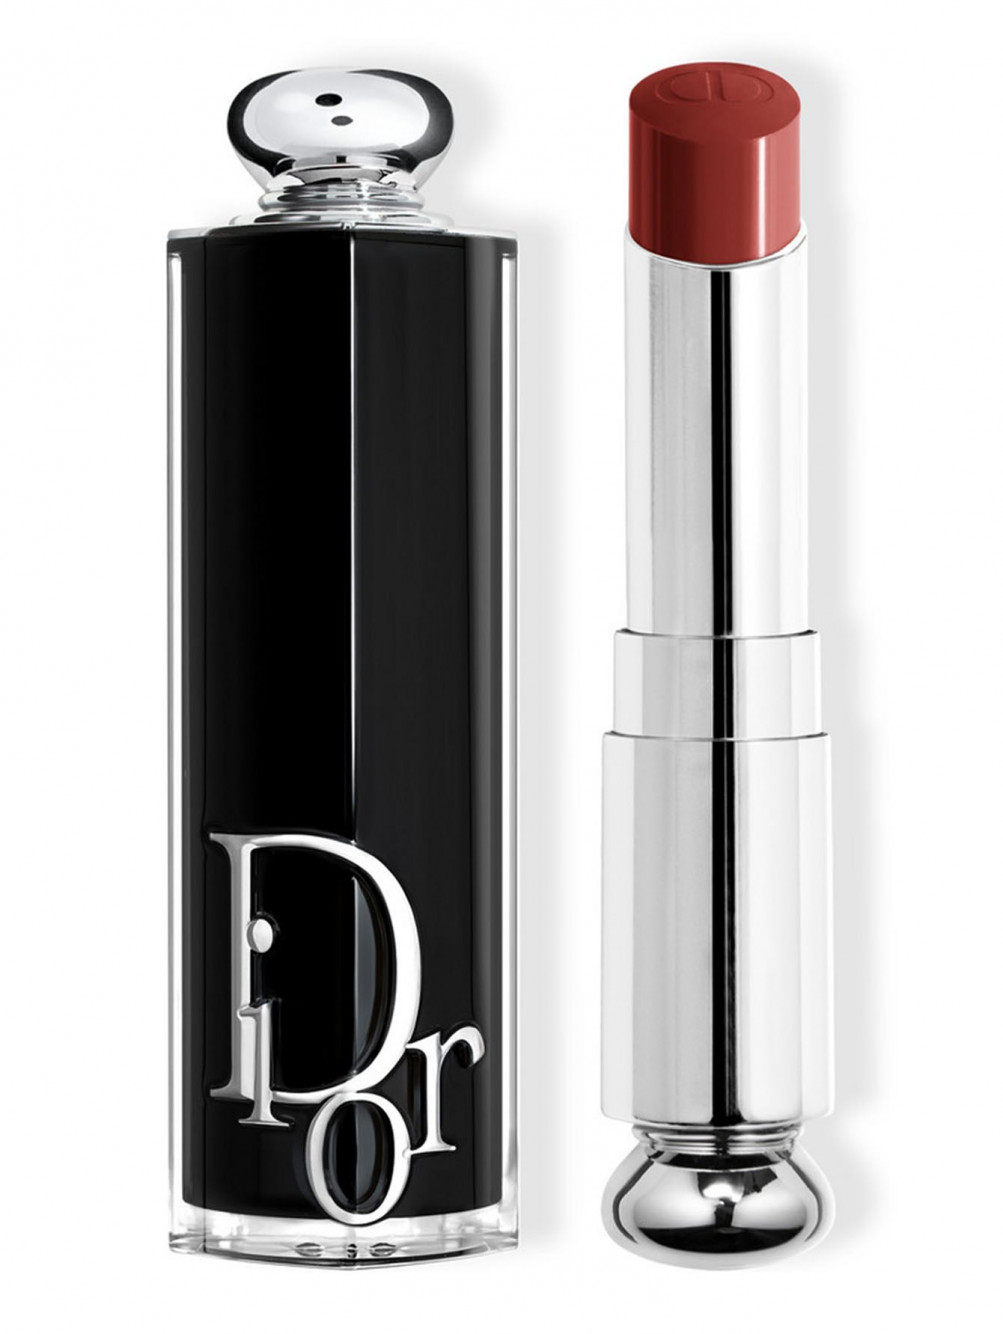 Помада для губ Dior Addict, Культовый 720, 3,2 г - Общий вид